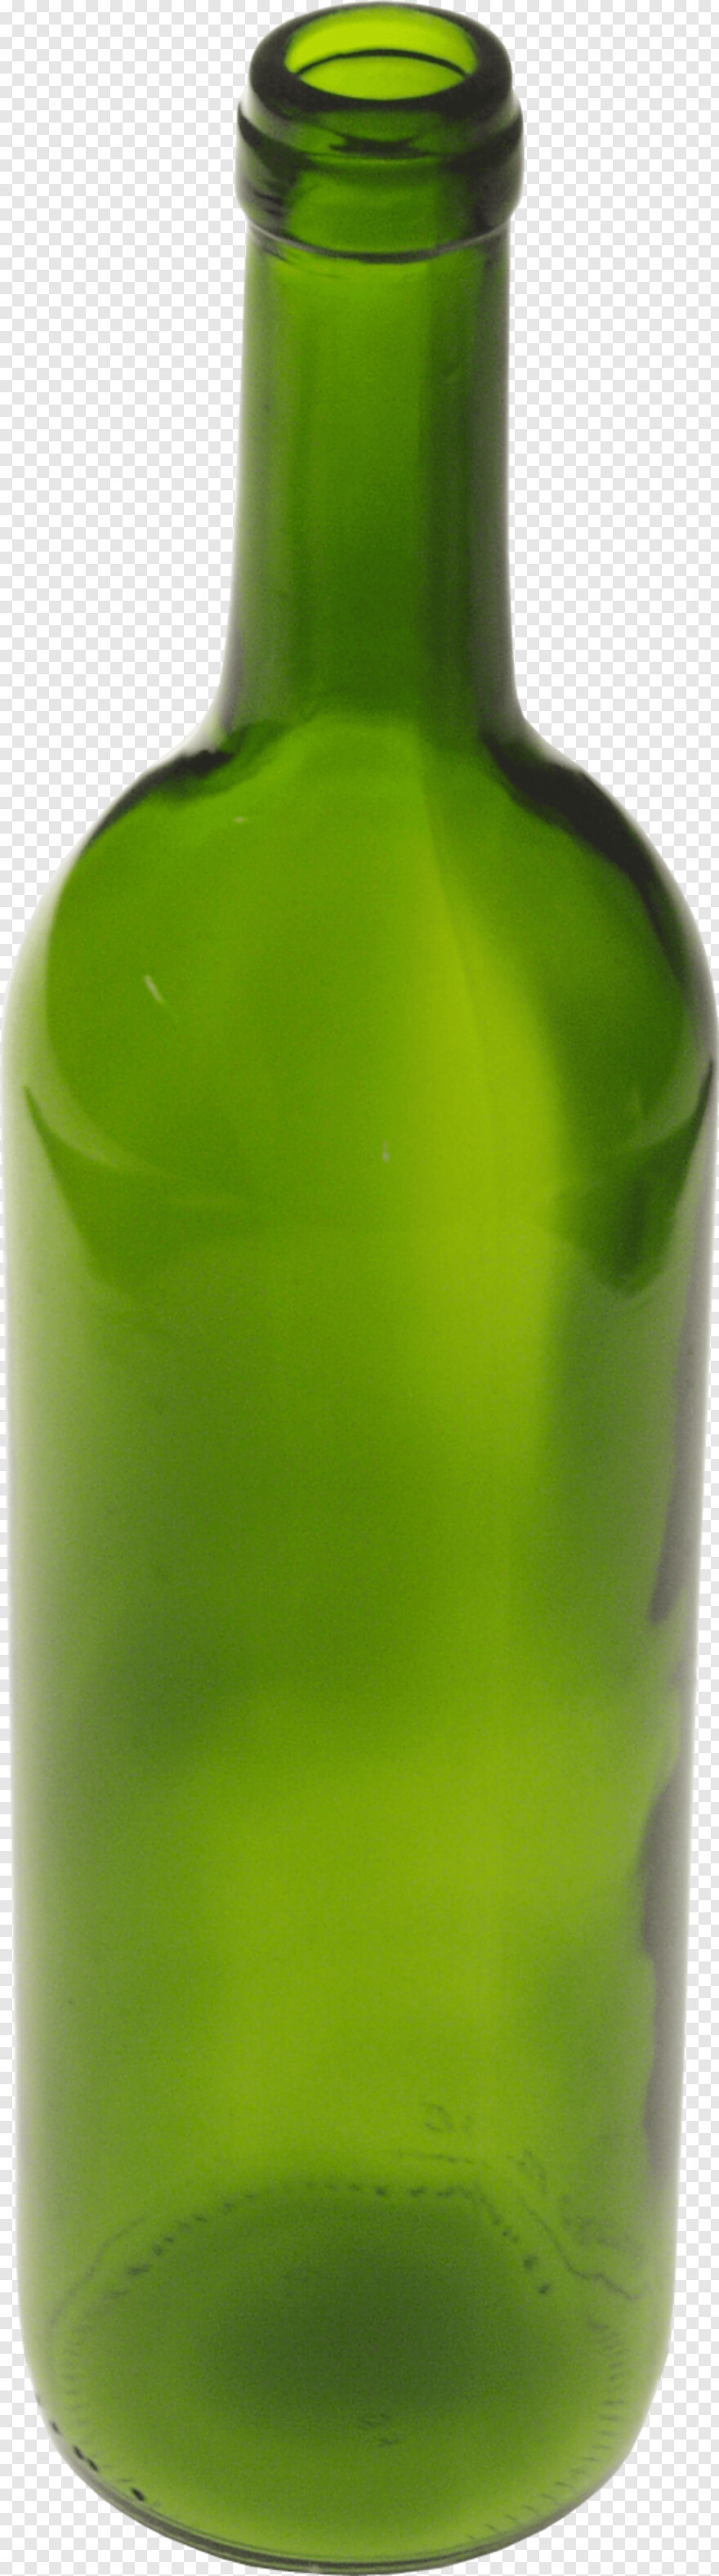  Glass Bottle, Empty Bottle, Wine Bottle, Bottle, Alcohol Bottle, Beer Bottle Vector